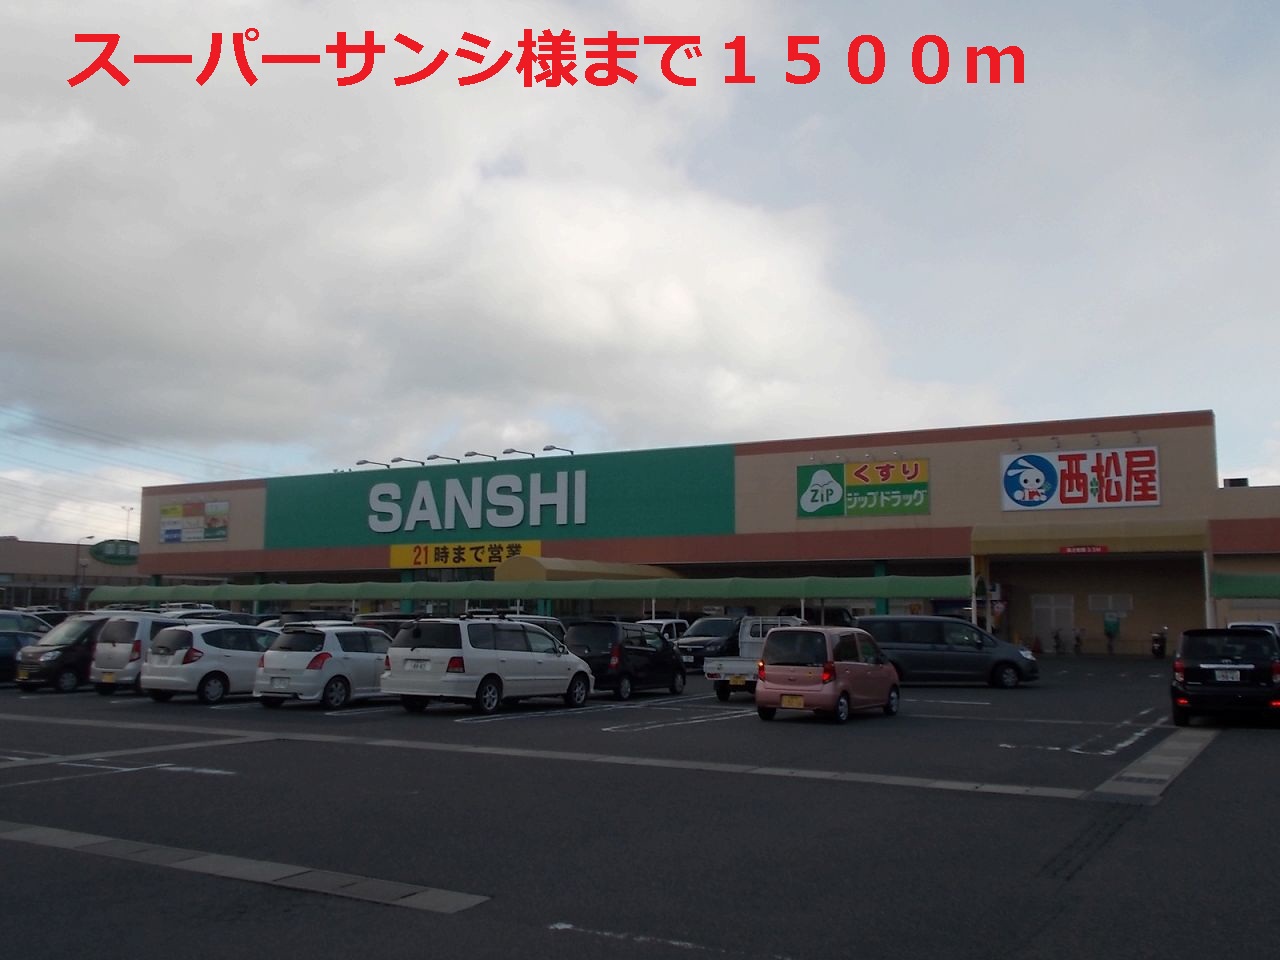 Supermarket. 1500m until Super Sansi (Super)